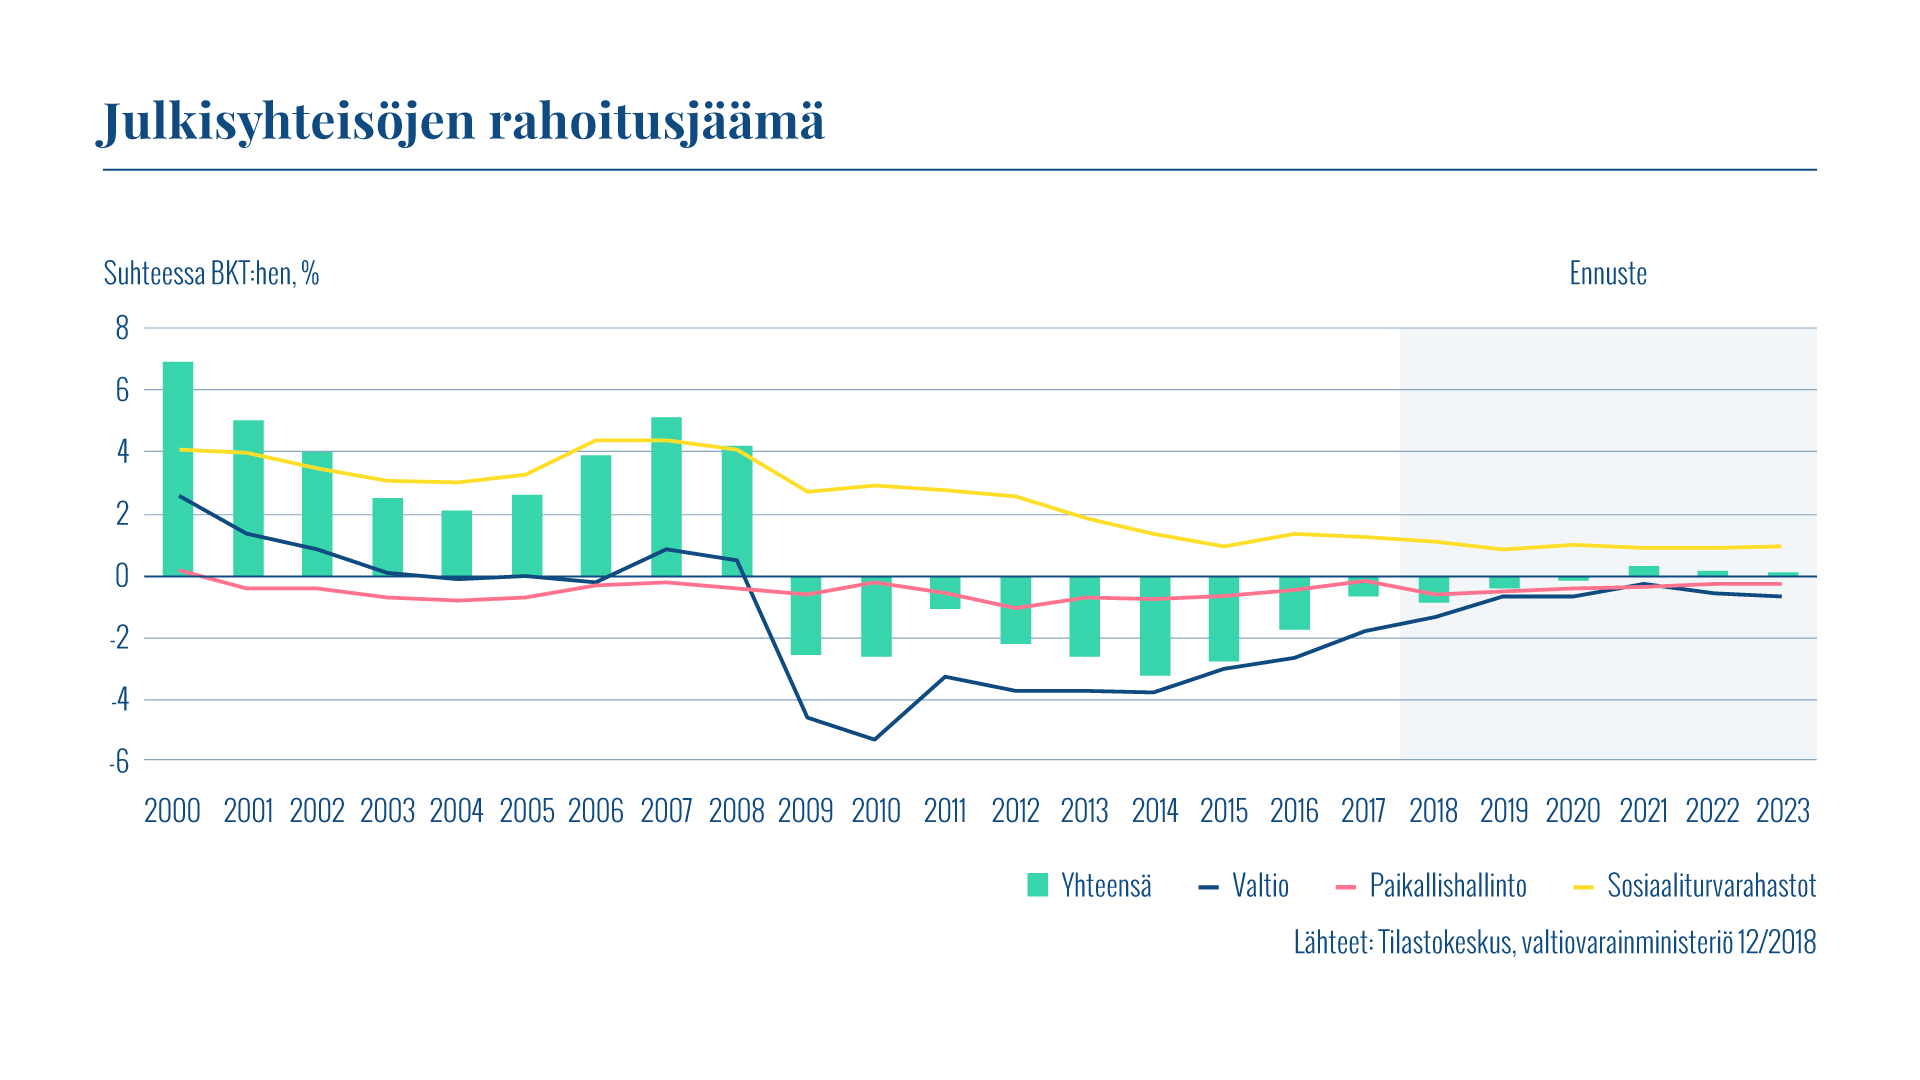 Kaaviossa esitetään Suomen julkisyhteisöjen rahoitusjäämä. Sosiaaliturvarahastot ovat ylijäämäisiä, mutta valtionhallinto ja paikallishallinto ovat hieman alijäämäisiä.